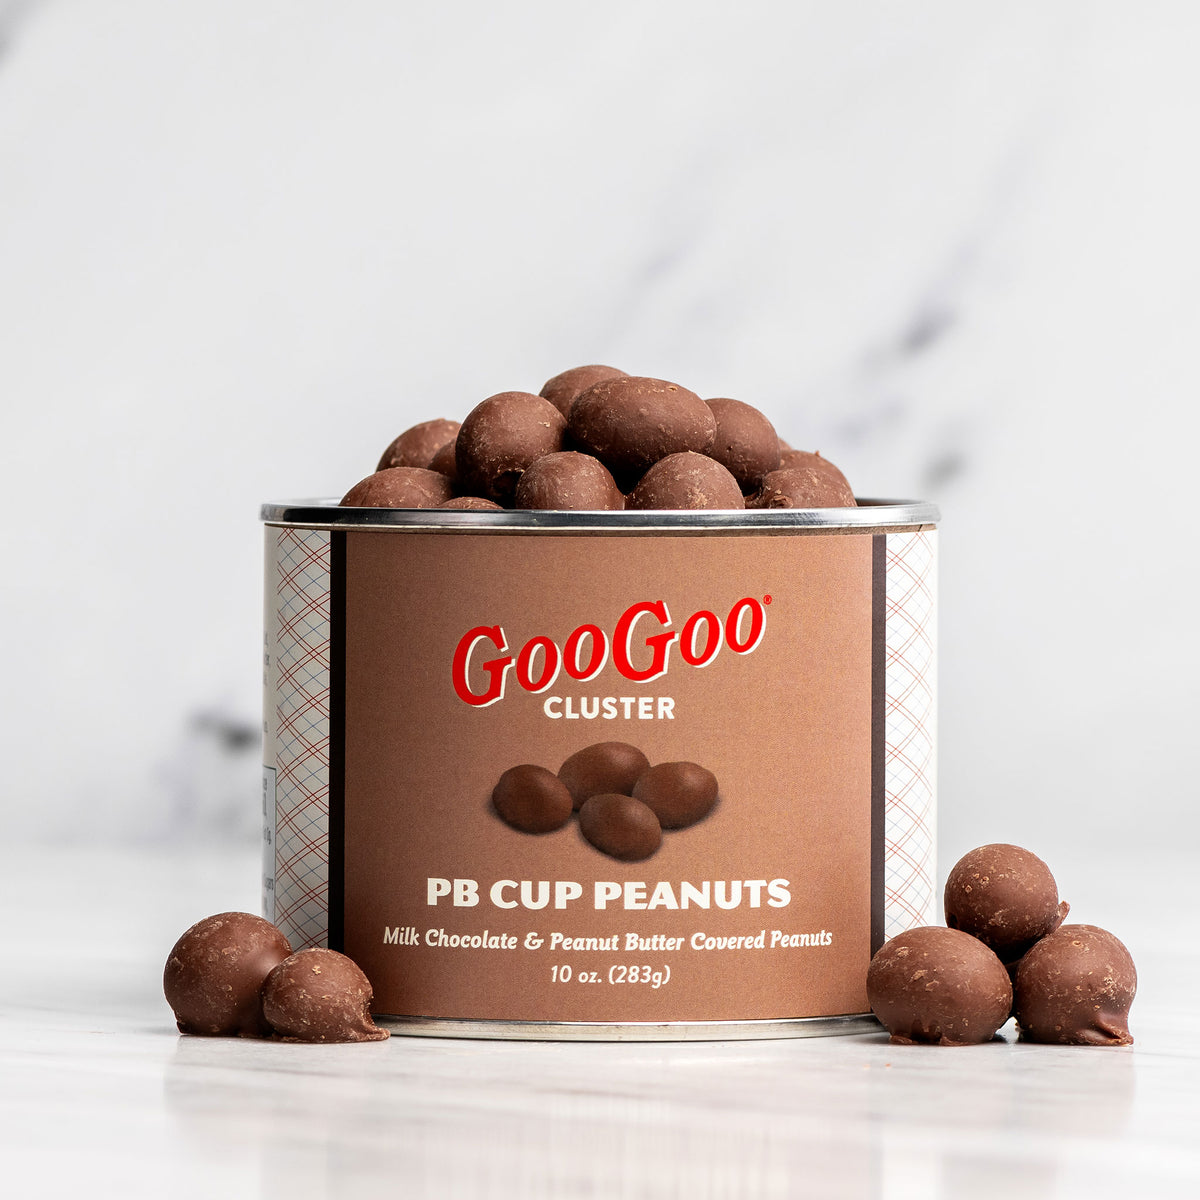 PB Cup Peanuts